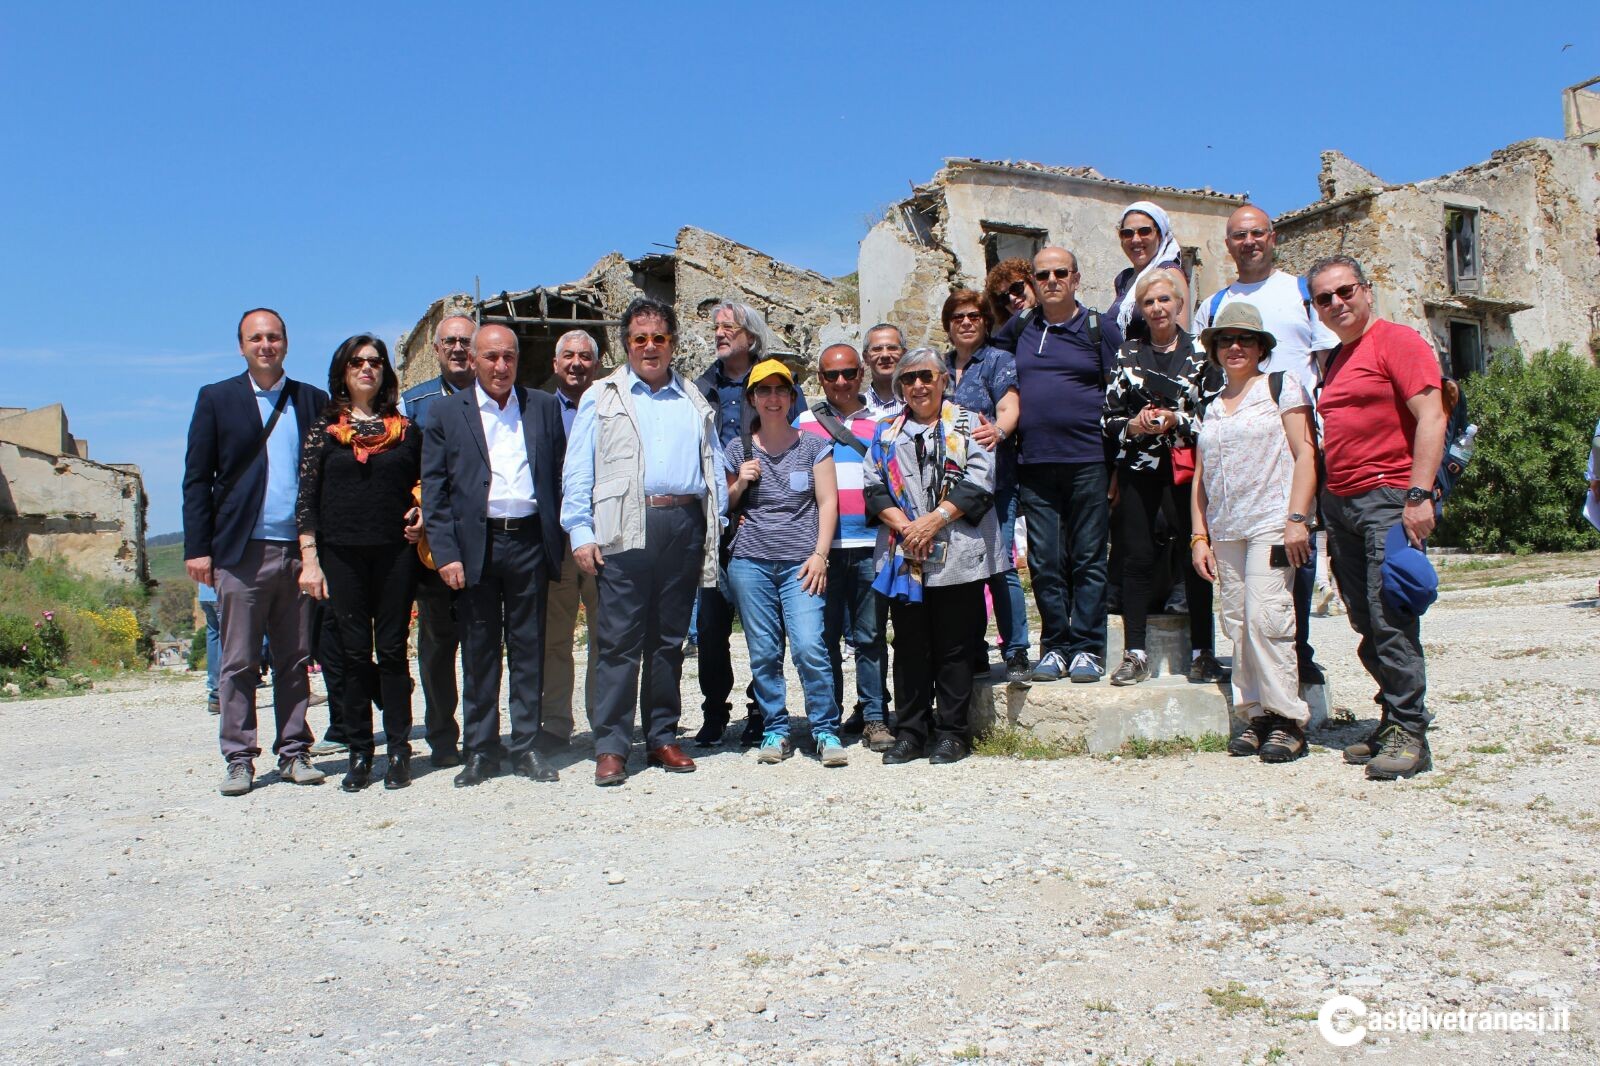 Il Gruppo Archeologico Selinunte presente oggi all'iniziativa "Viaggio tra i ruderi" 41